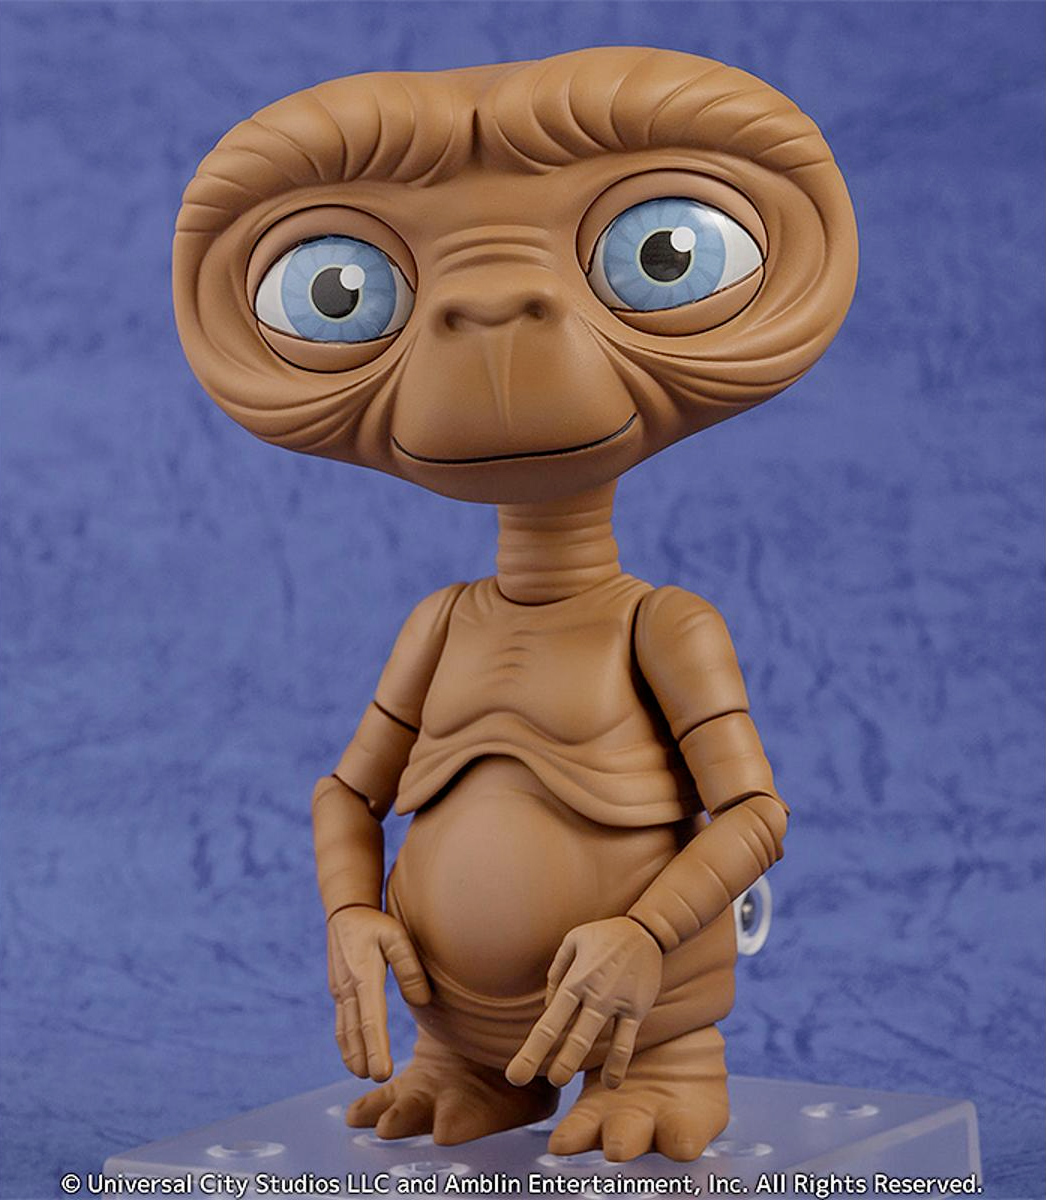 Boneco Nendoroid E.T. - O Extraterrestre (Steven Spielberg)